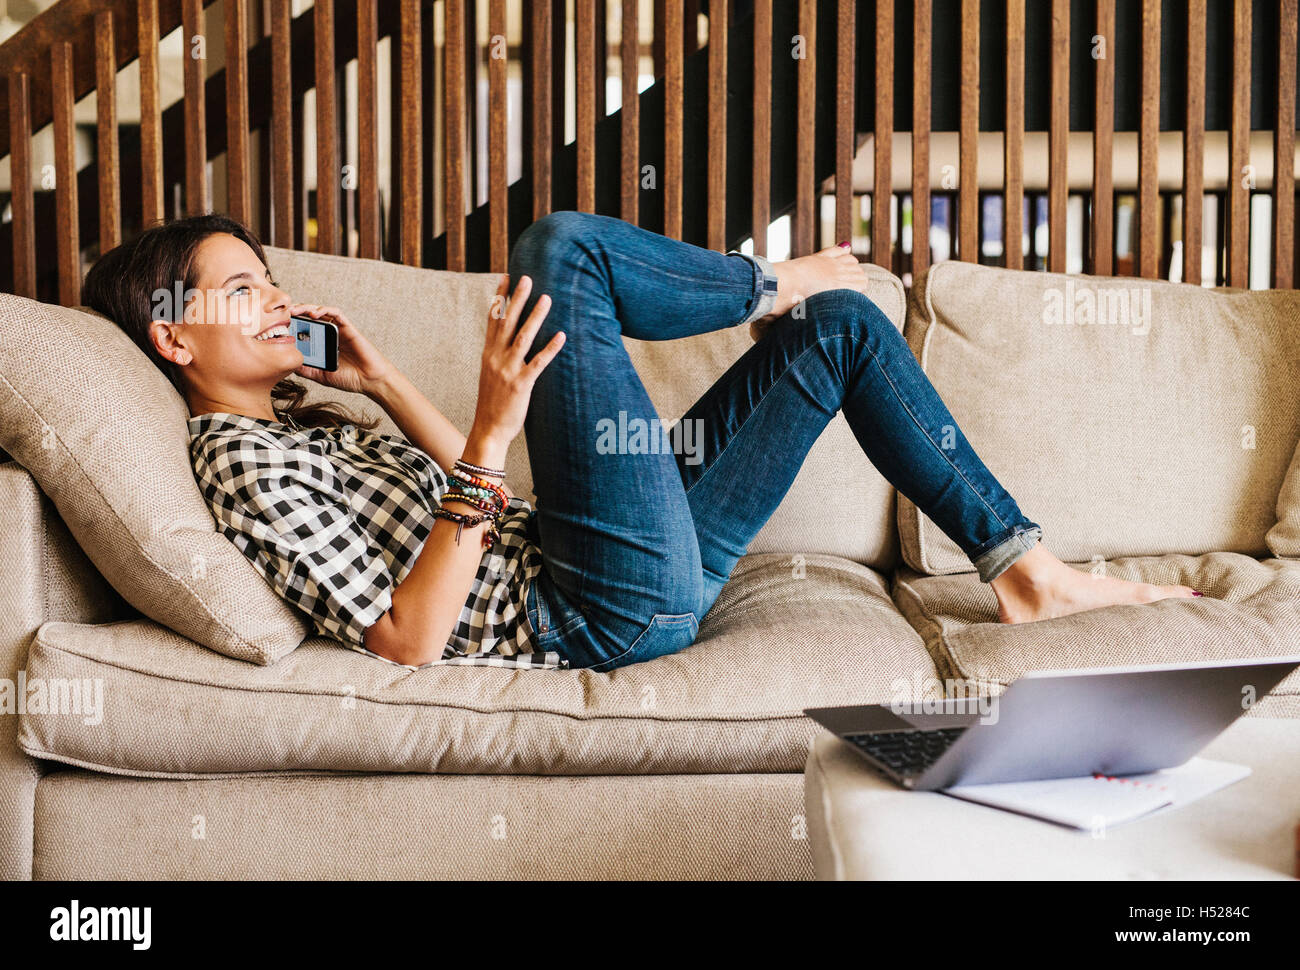 Femme aux longs cheveux brun couché sur un canapé, à l'aide d'un téléphone mobile. Banque D'Images